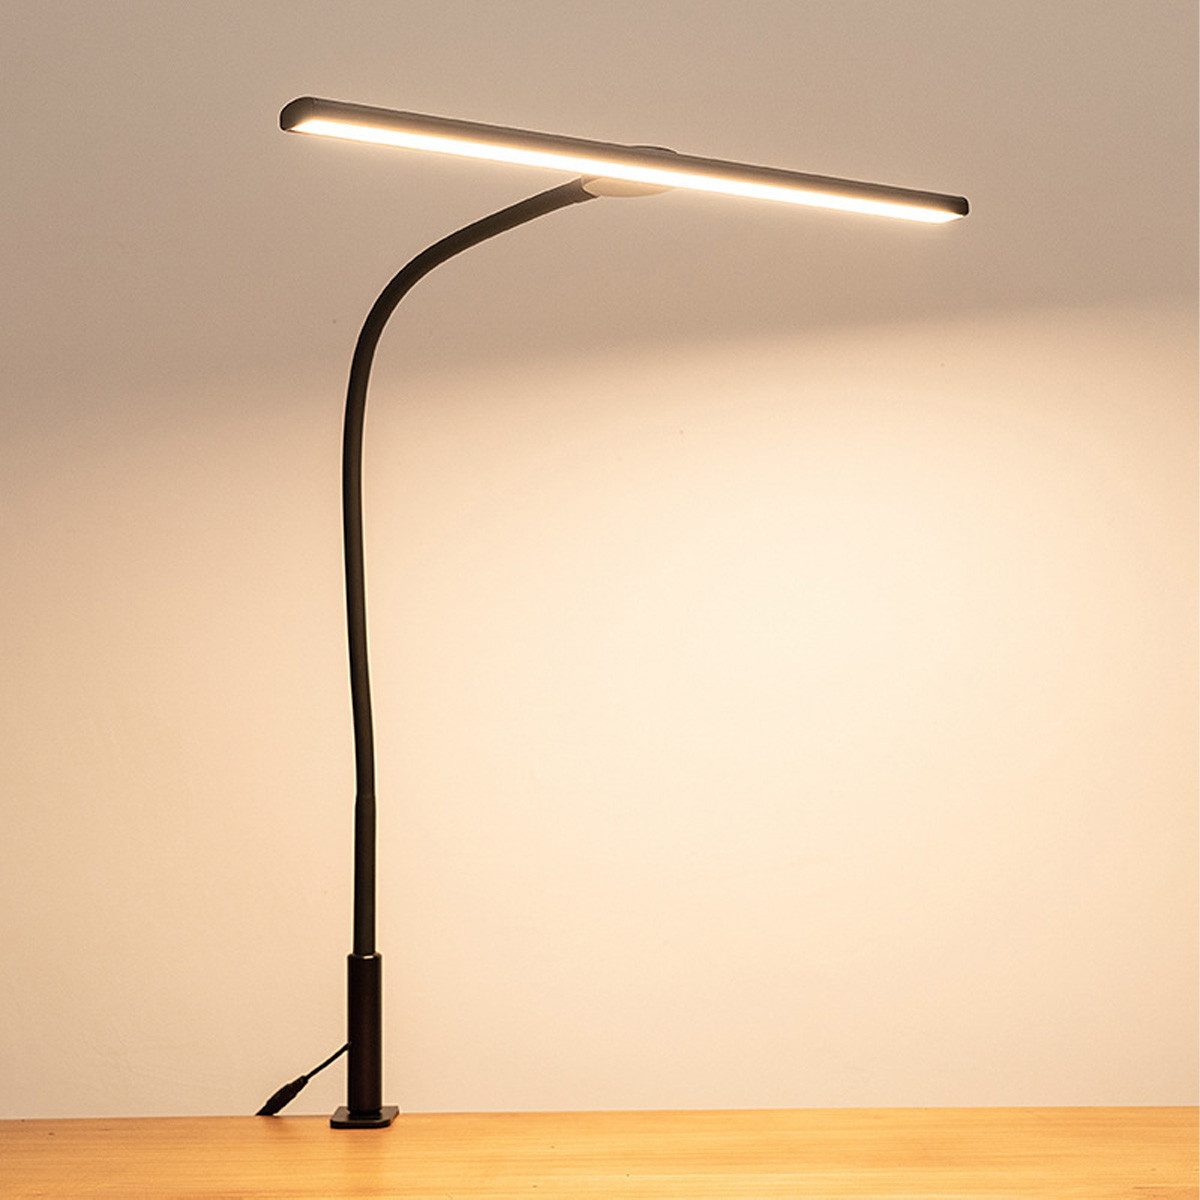 Welikera Schreibtischlampe Klemmtischleuchte,18W Led Tischleuchte Klemmbar,Monitor Lampe,46cm